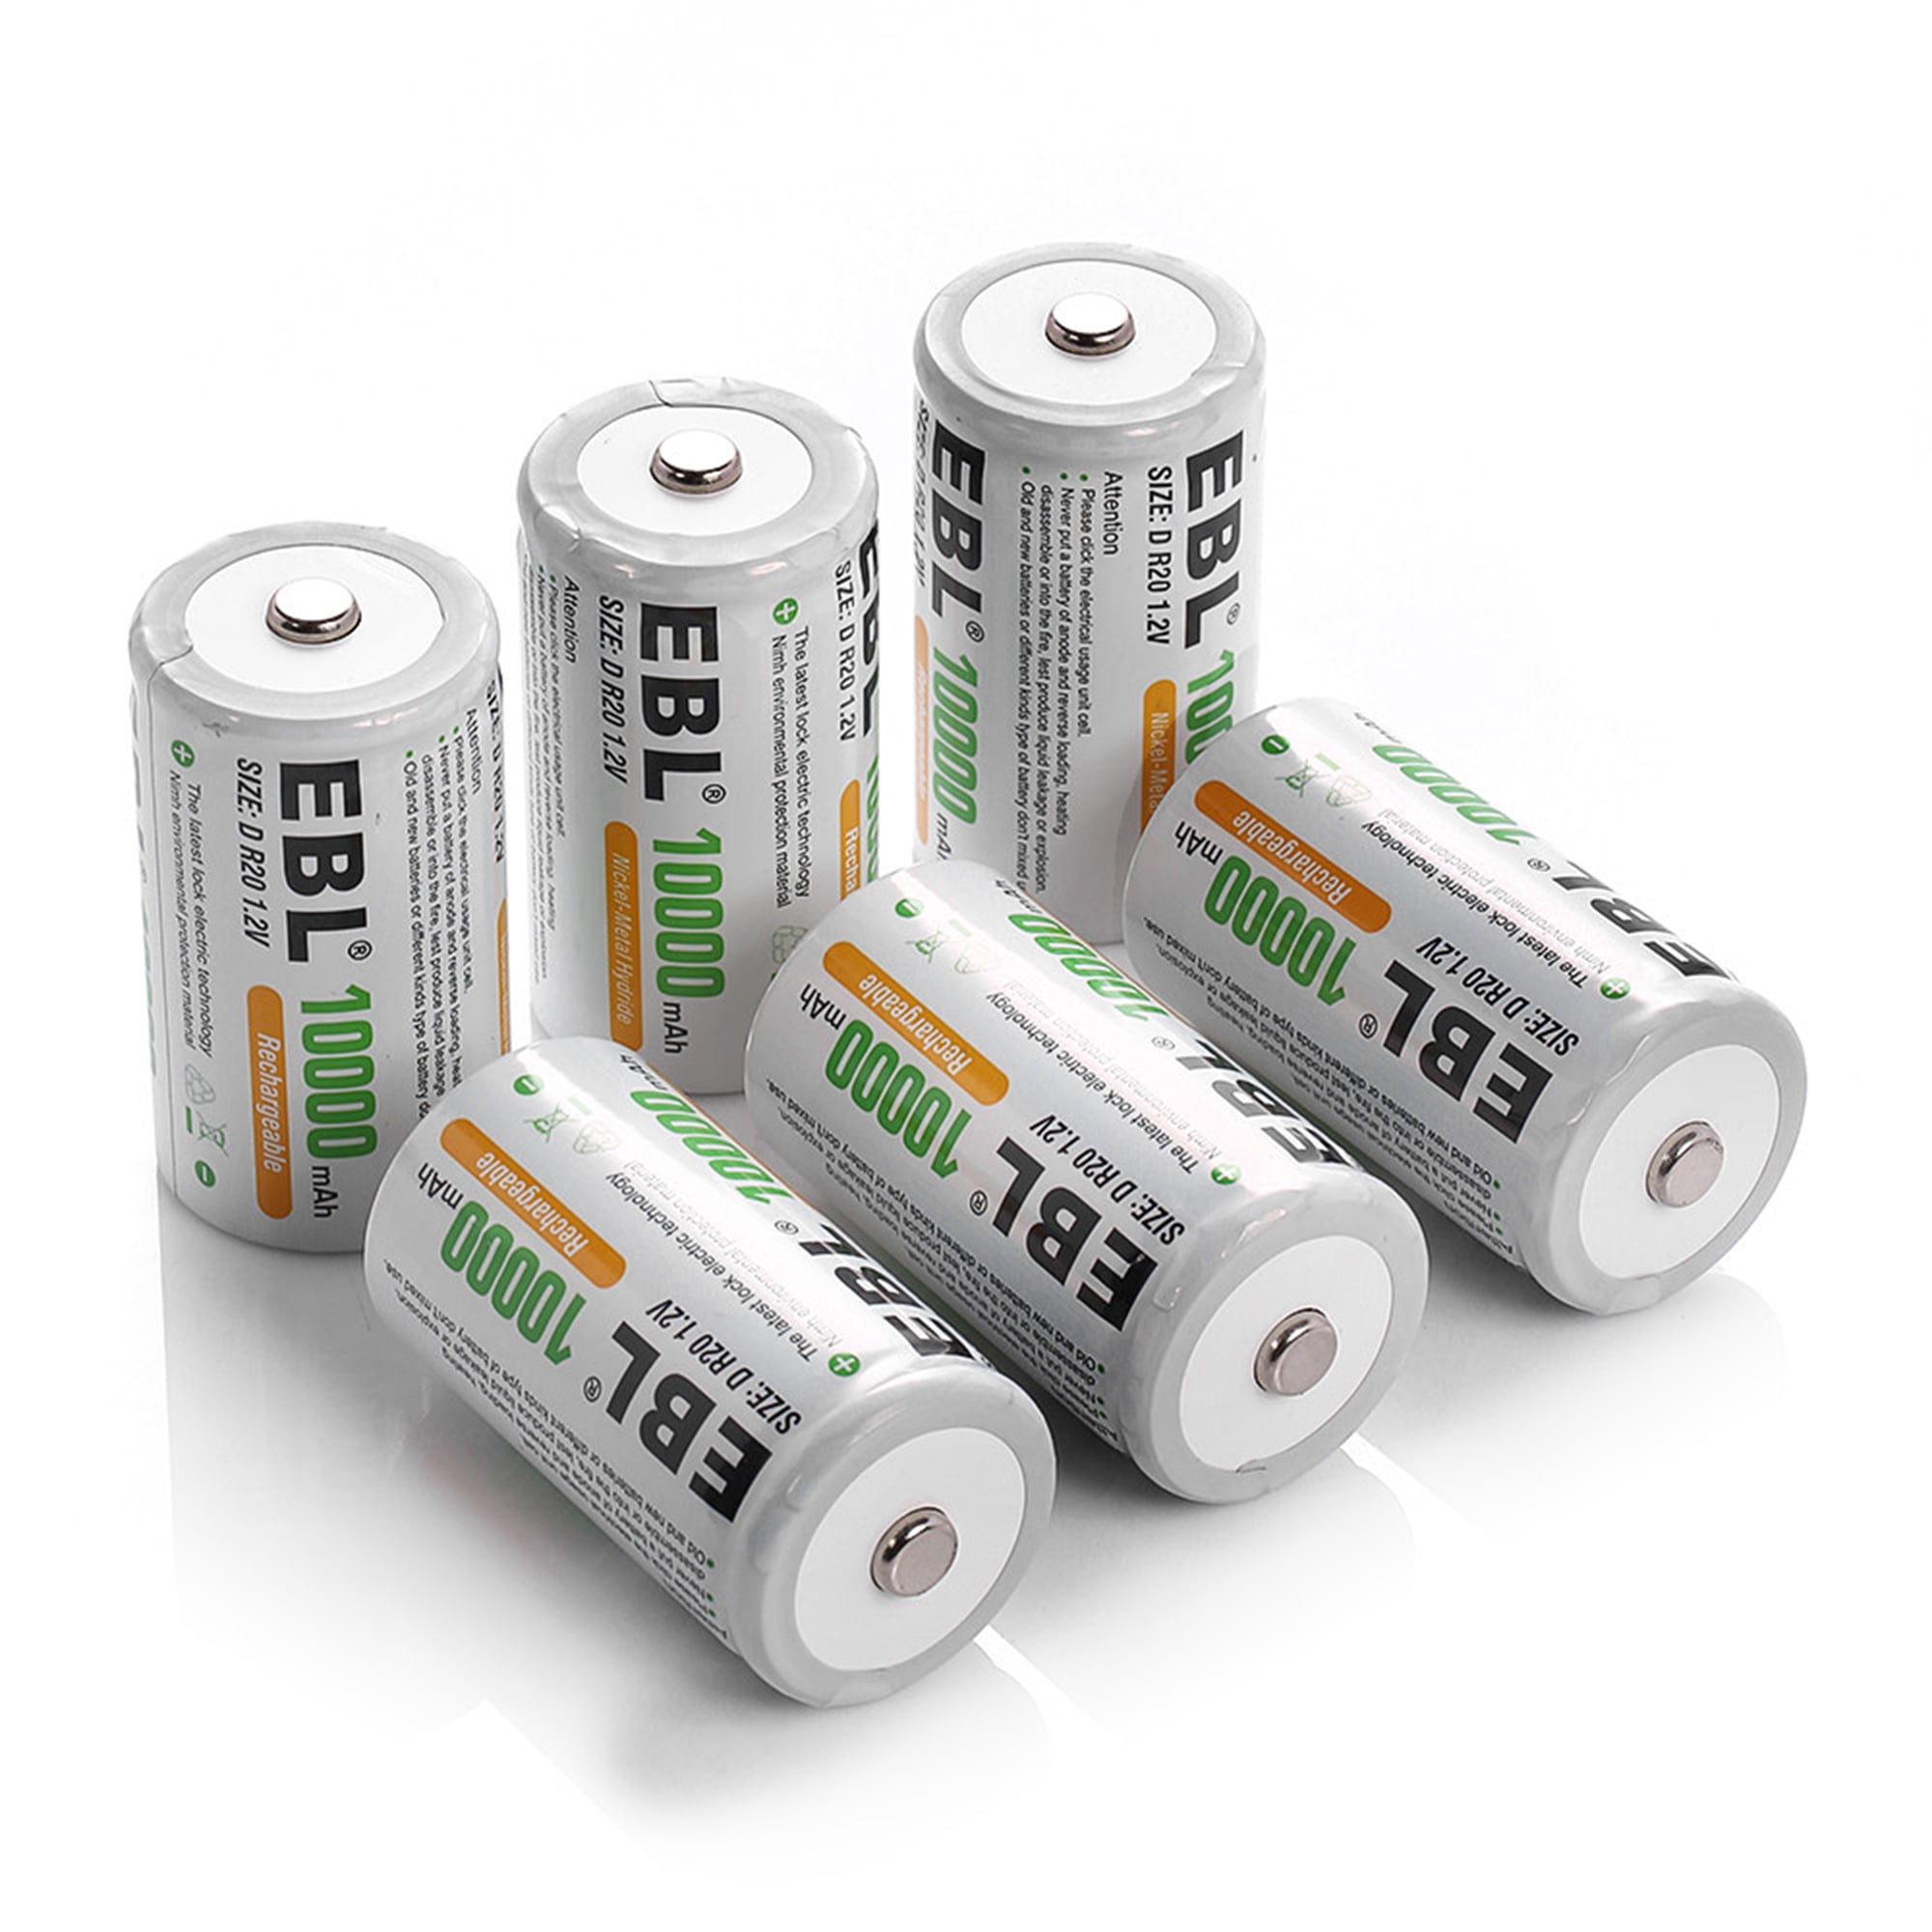 Piles rechargeables D NiMH - accu R20 2500mAh Energizer - par 2